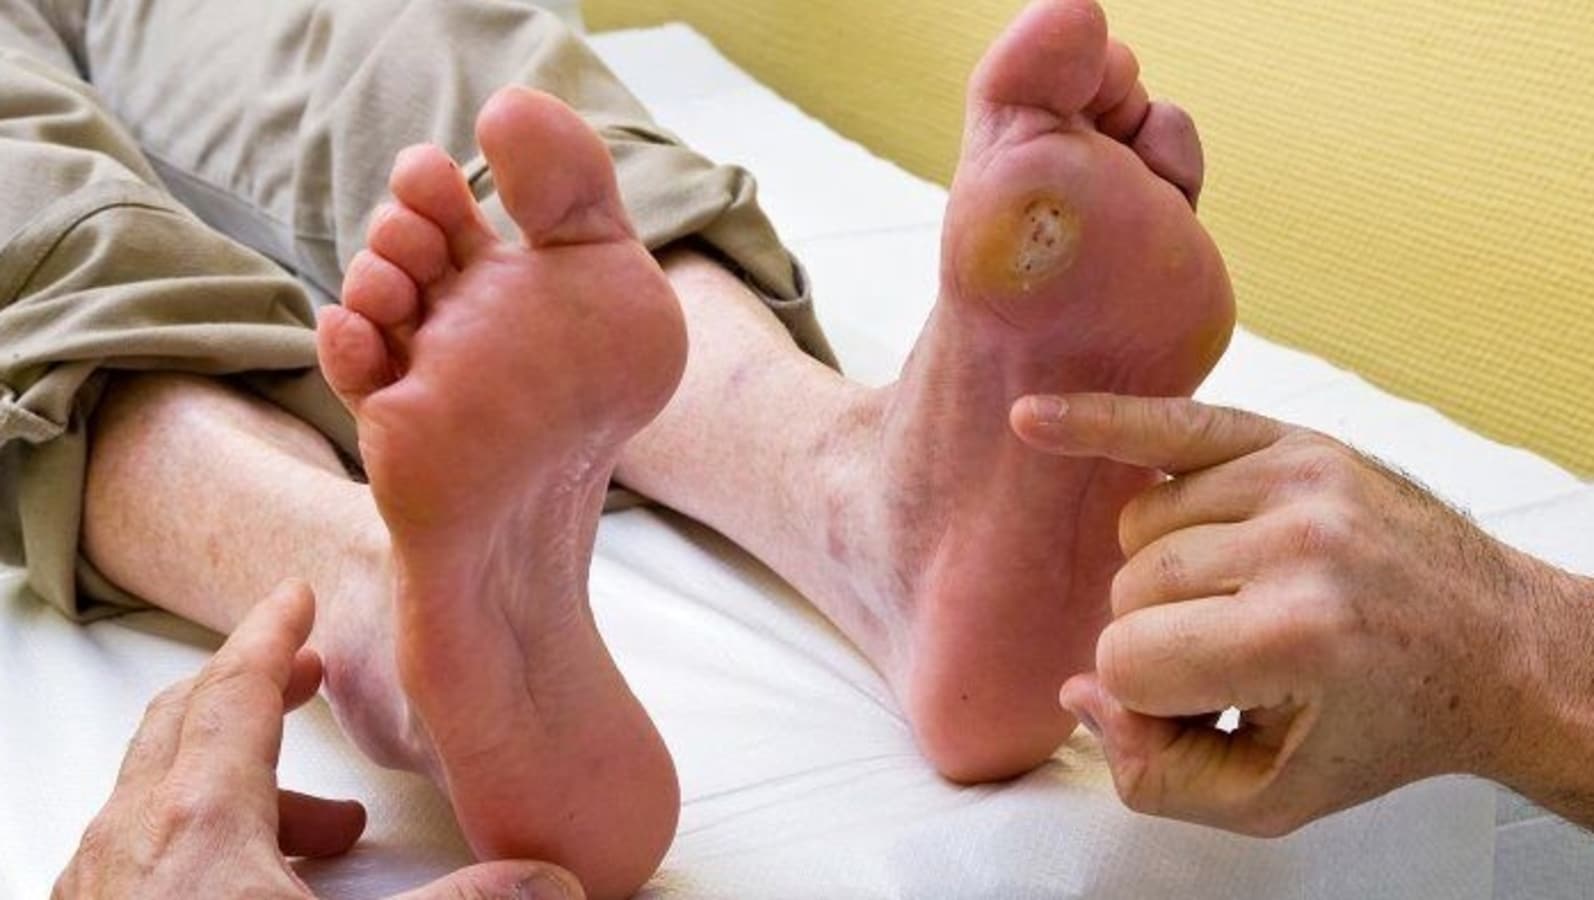 मधुमेह में पैर के अल्सर: पैर के अल्सर को रोकने के लिए 5 व्यावहारिक युक्तियों के साथ मधुमेह रोगियों के लिए सरल मार्गदर्शिका